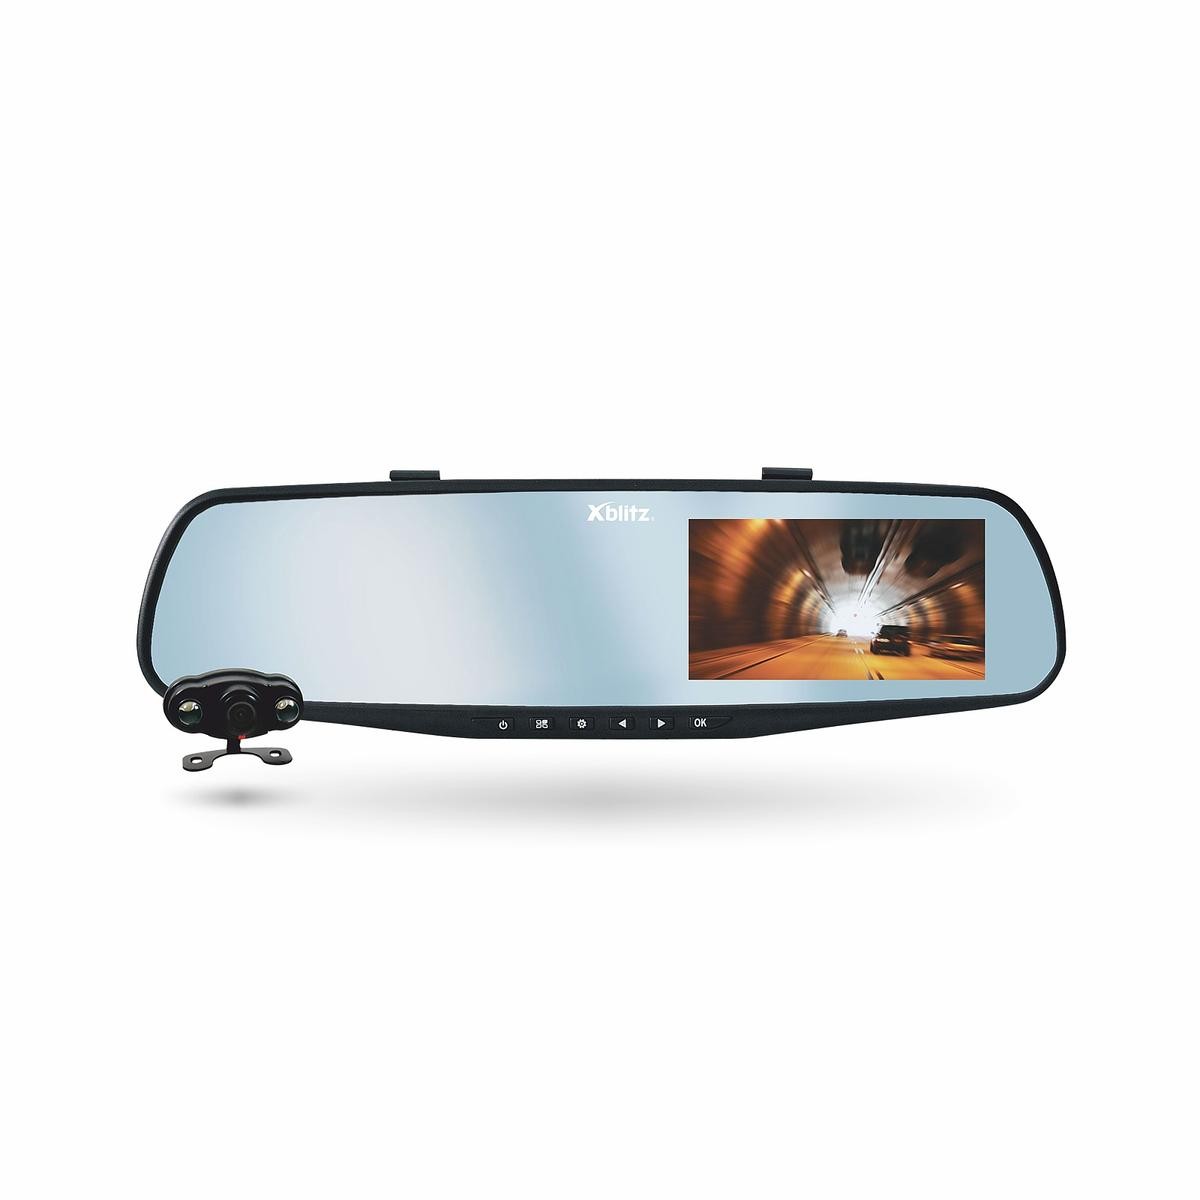 Xblitz Park View Ultra Dash Cam Dual Car Camera with Rear View Camera 